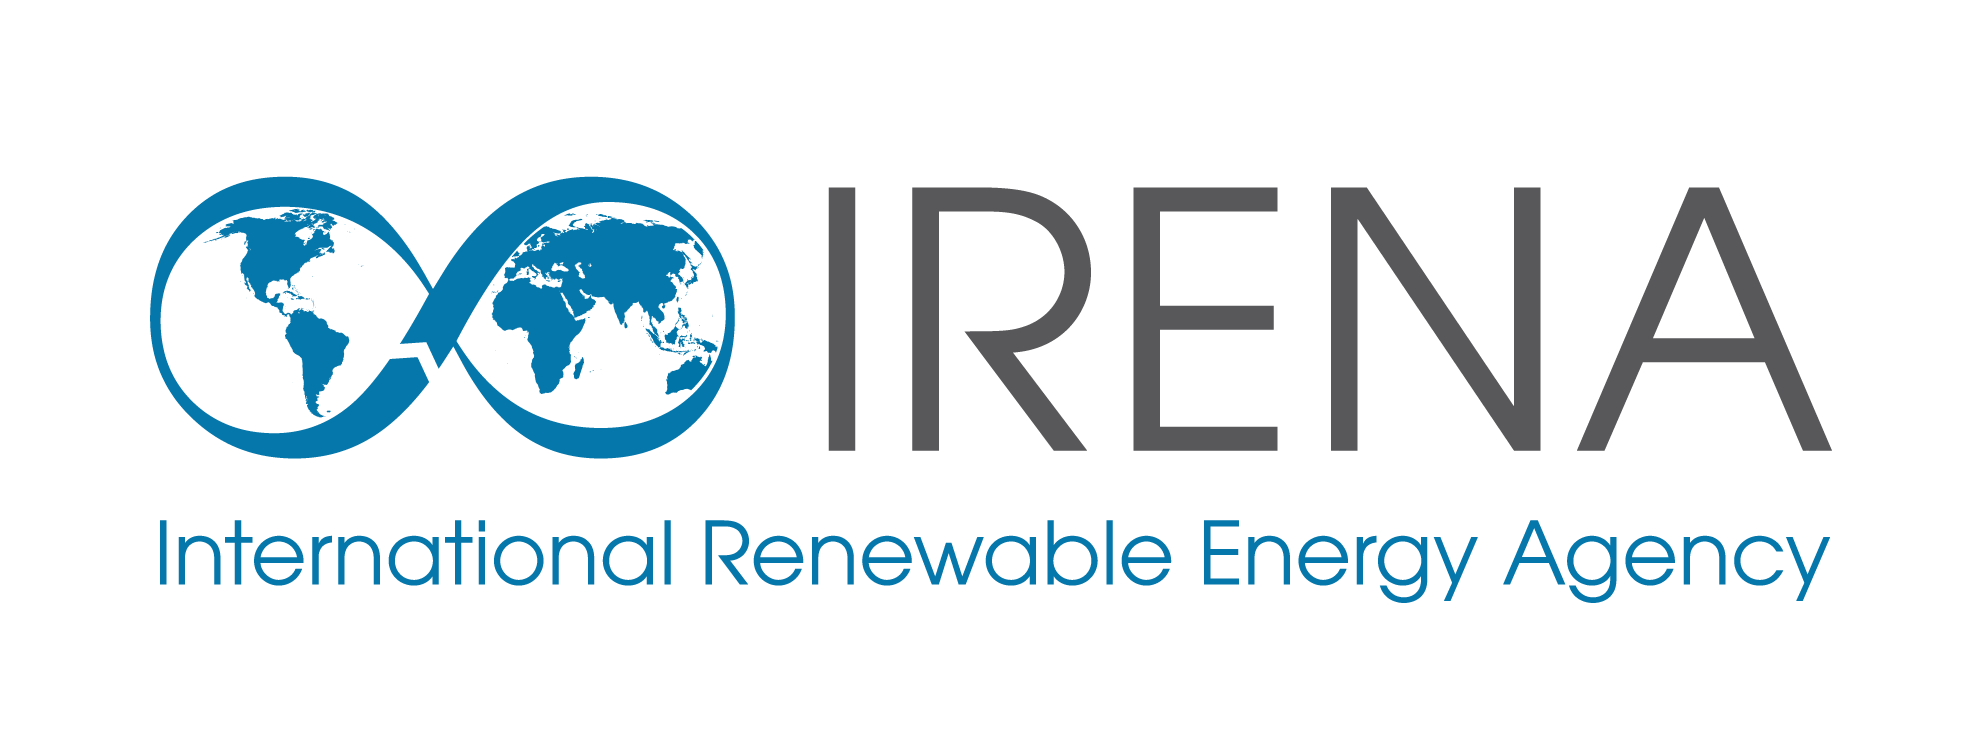 Image: logo of International Renewable Energy Agency (IRENA)